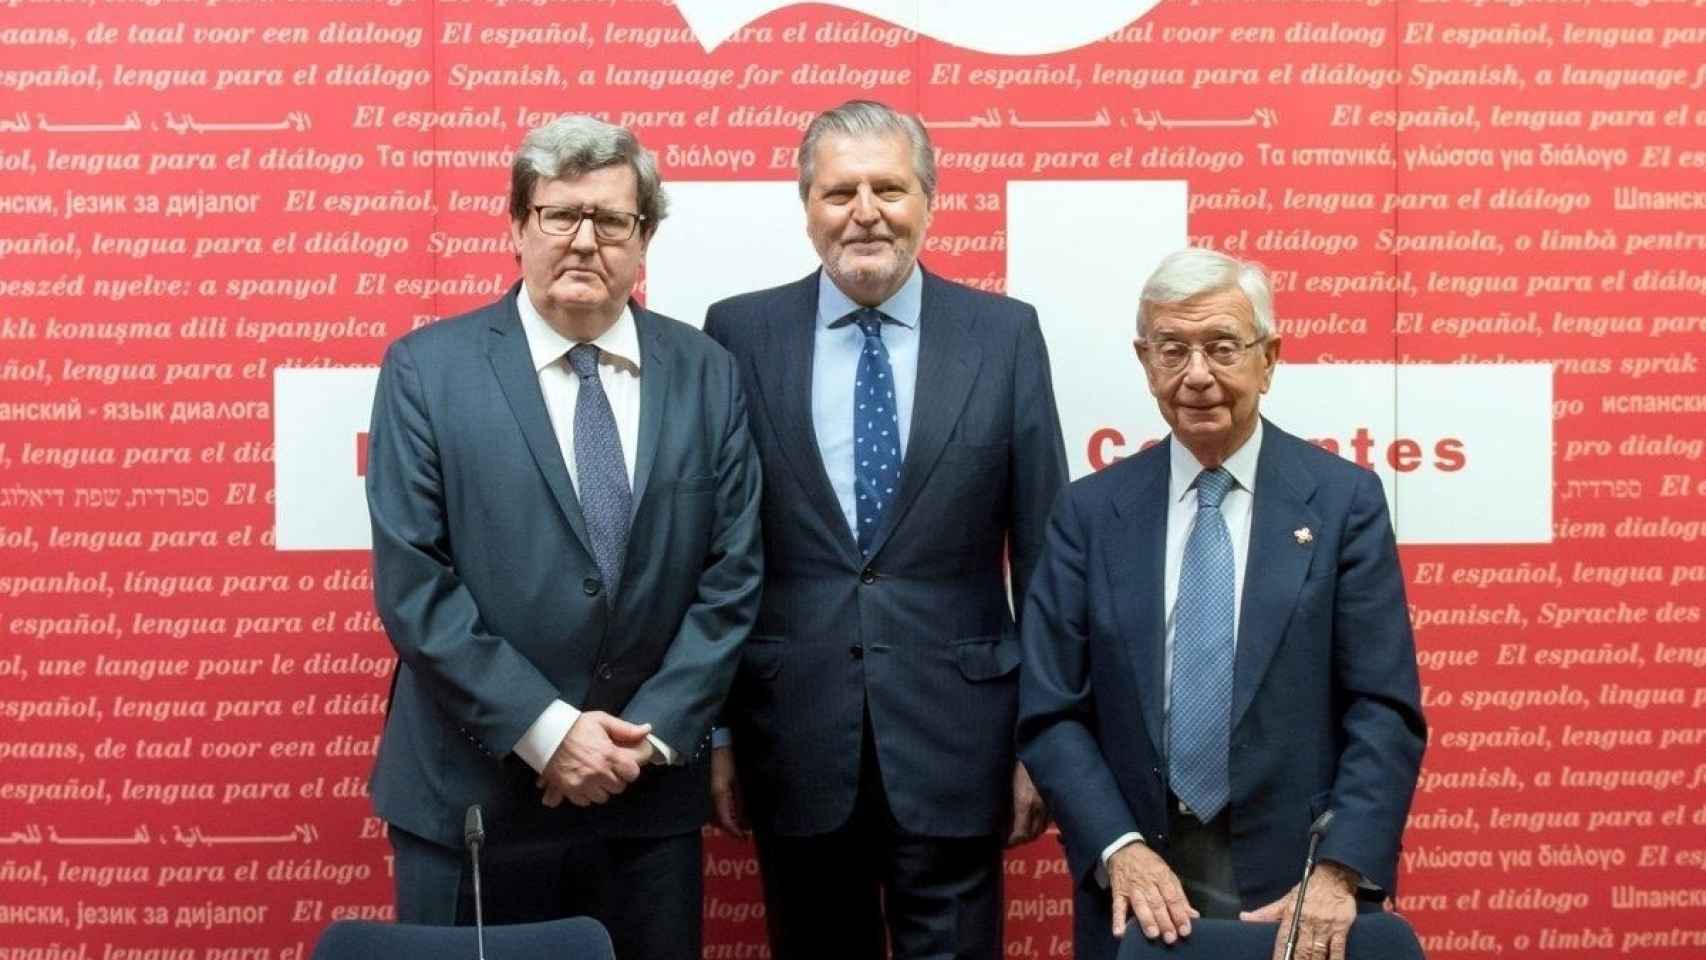 El director del Instituto Cervantes y el presidente de la RAEG firman un acuerdo.